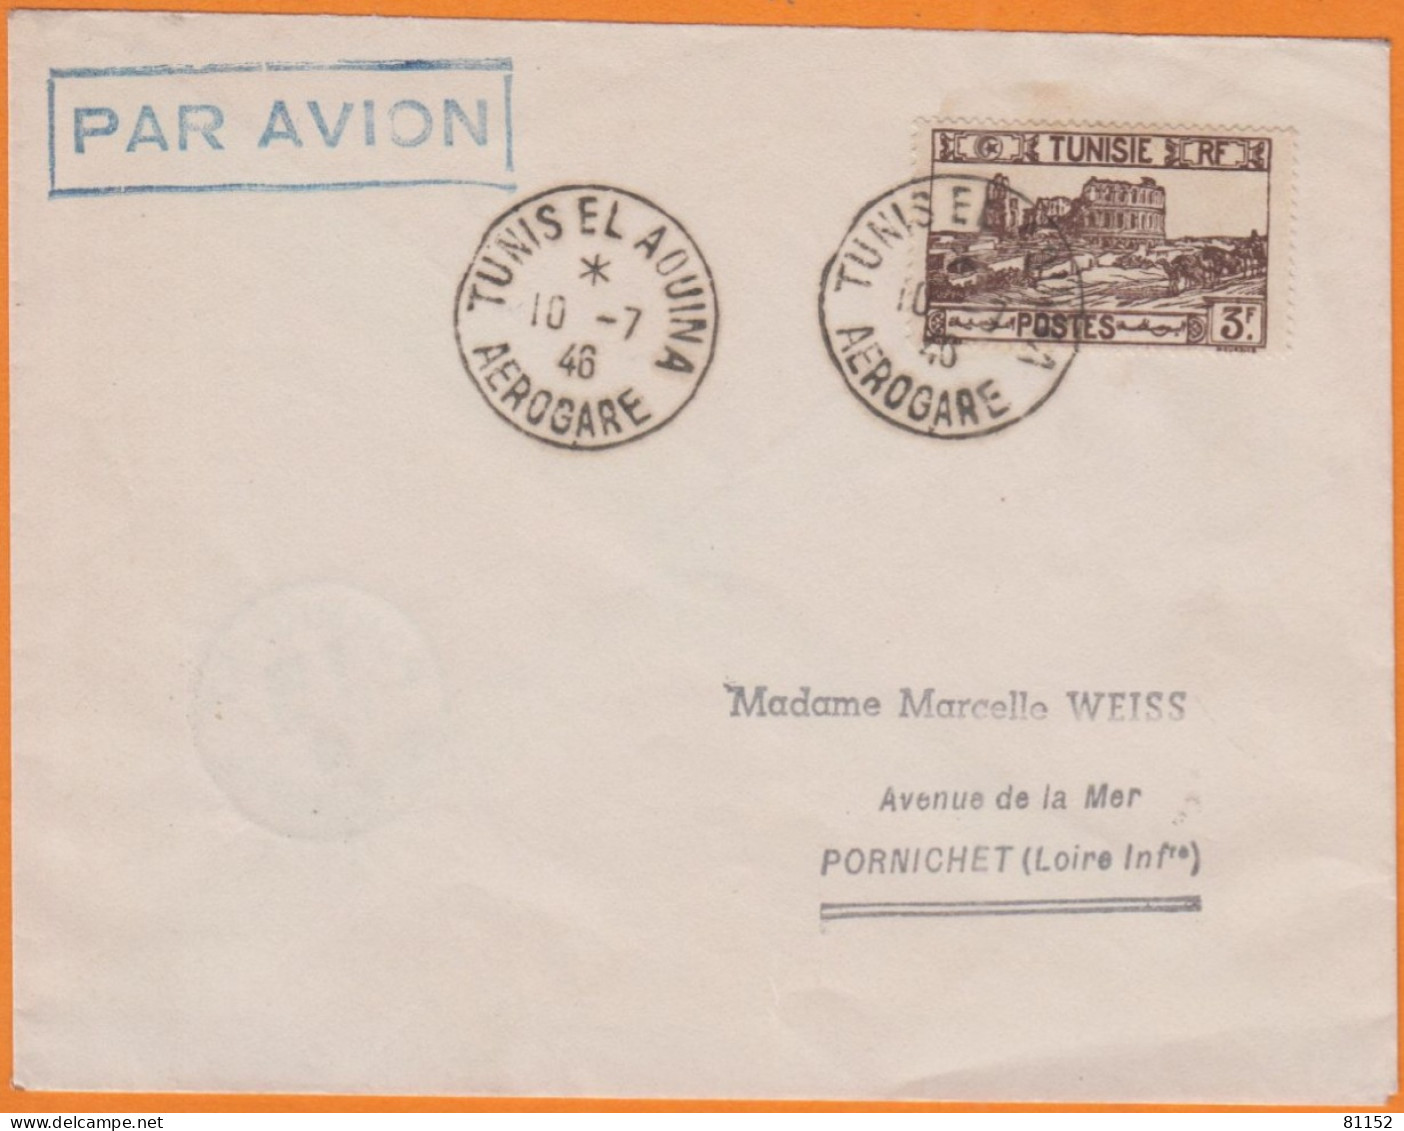 Lettre PAR AVION De TUNIS EL AOUINA  AEROGARE   Le 10 7 1947   Pour  44 PORNICHET  Affranchie à 3F - Luftpost